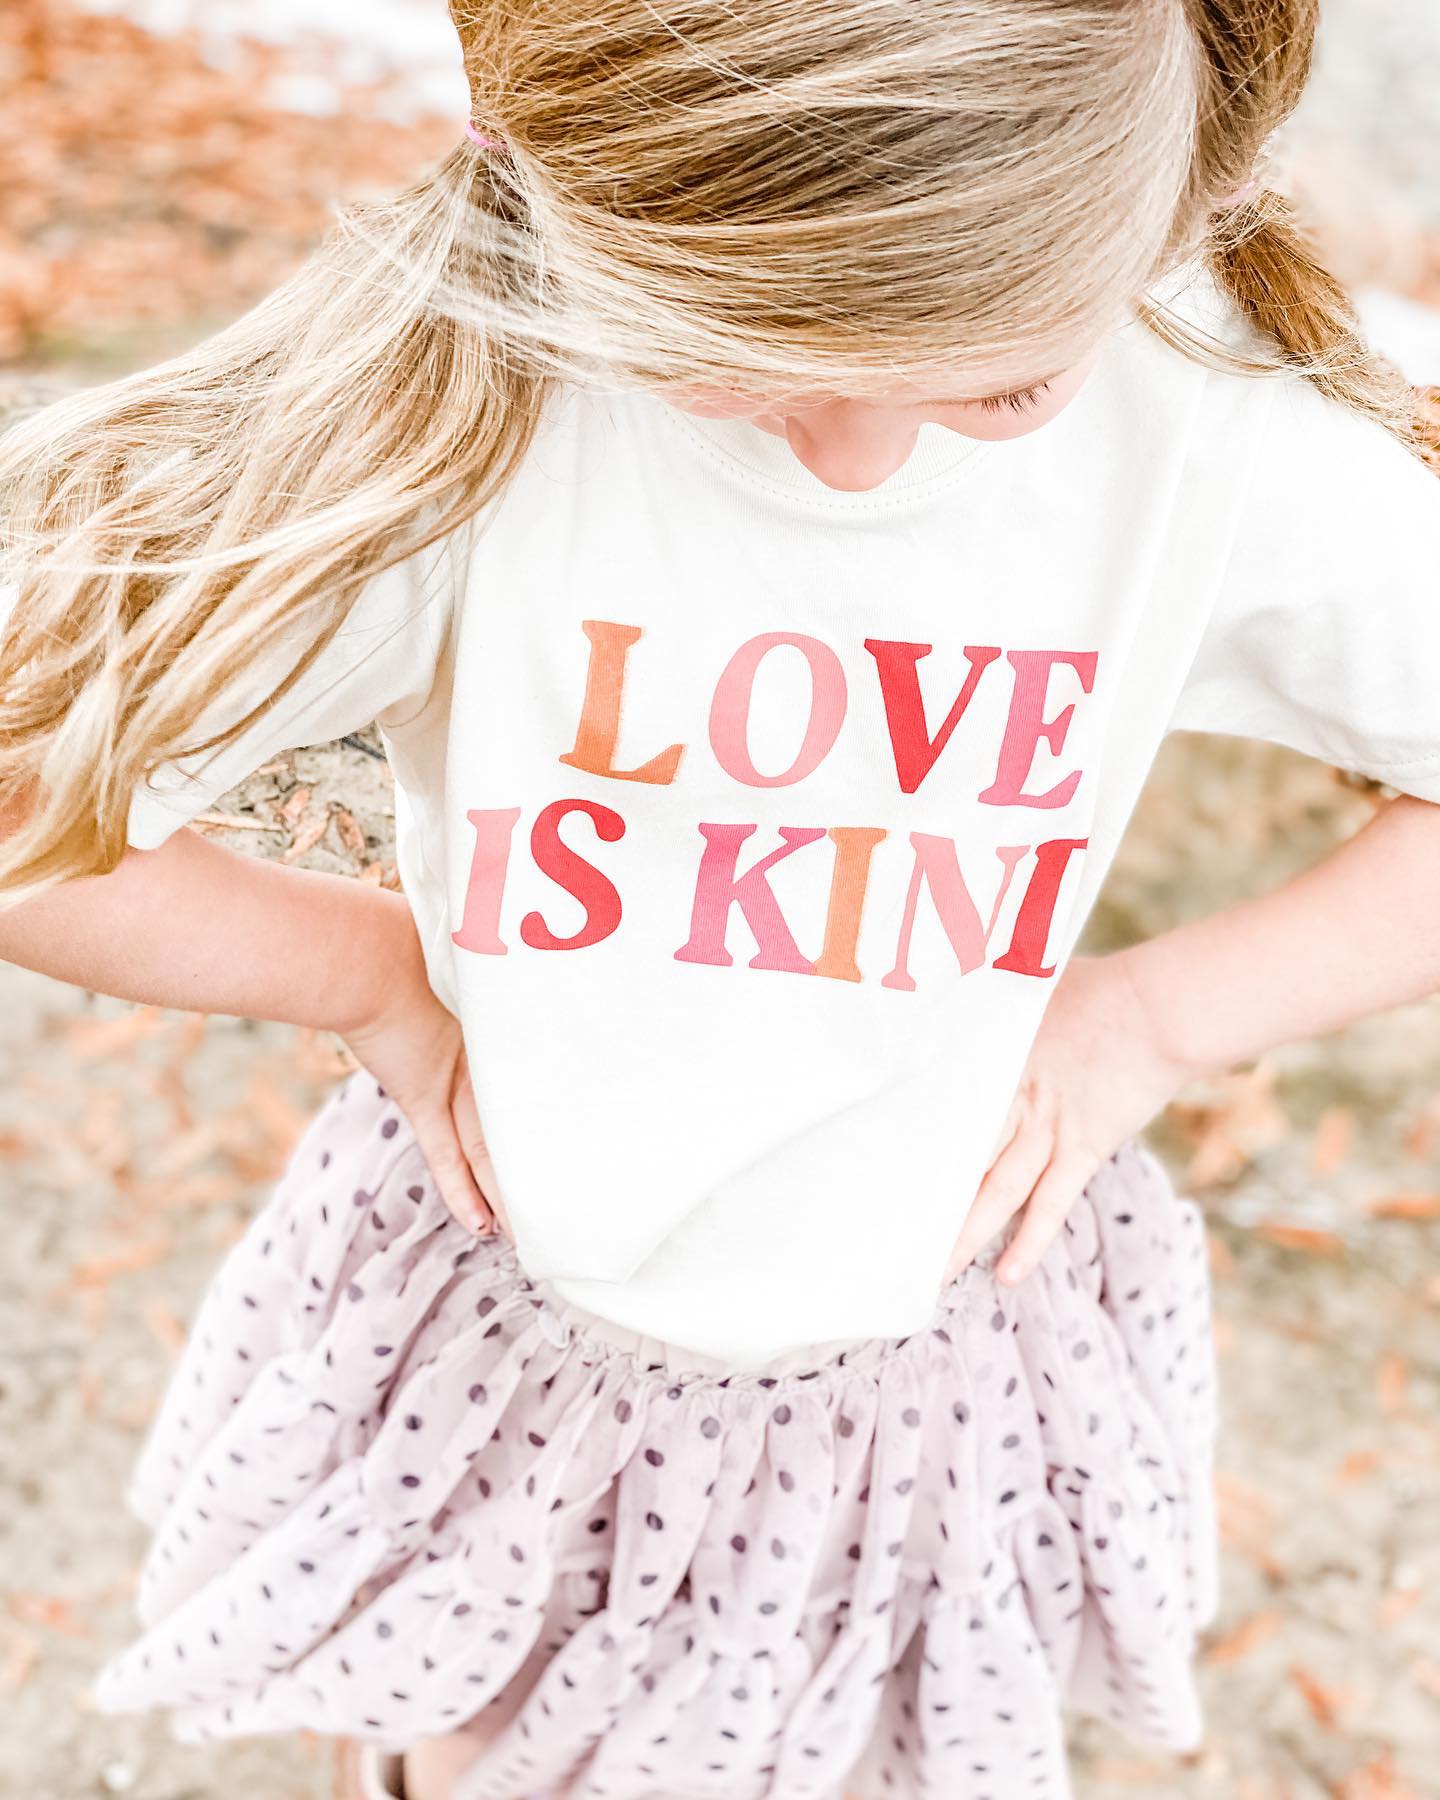 Love-is-kind-kid